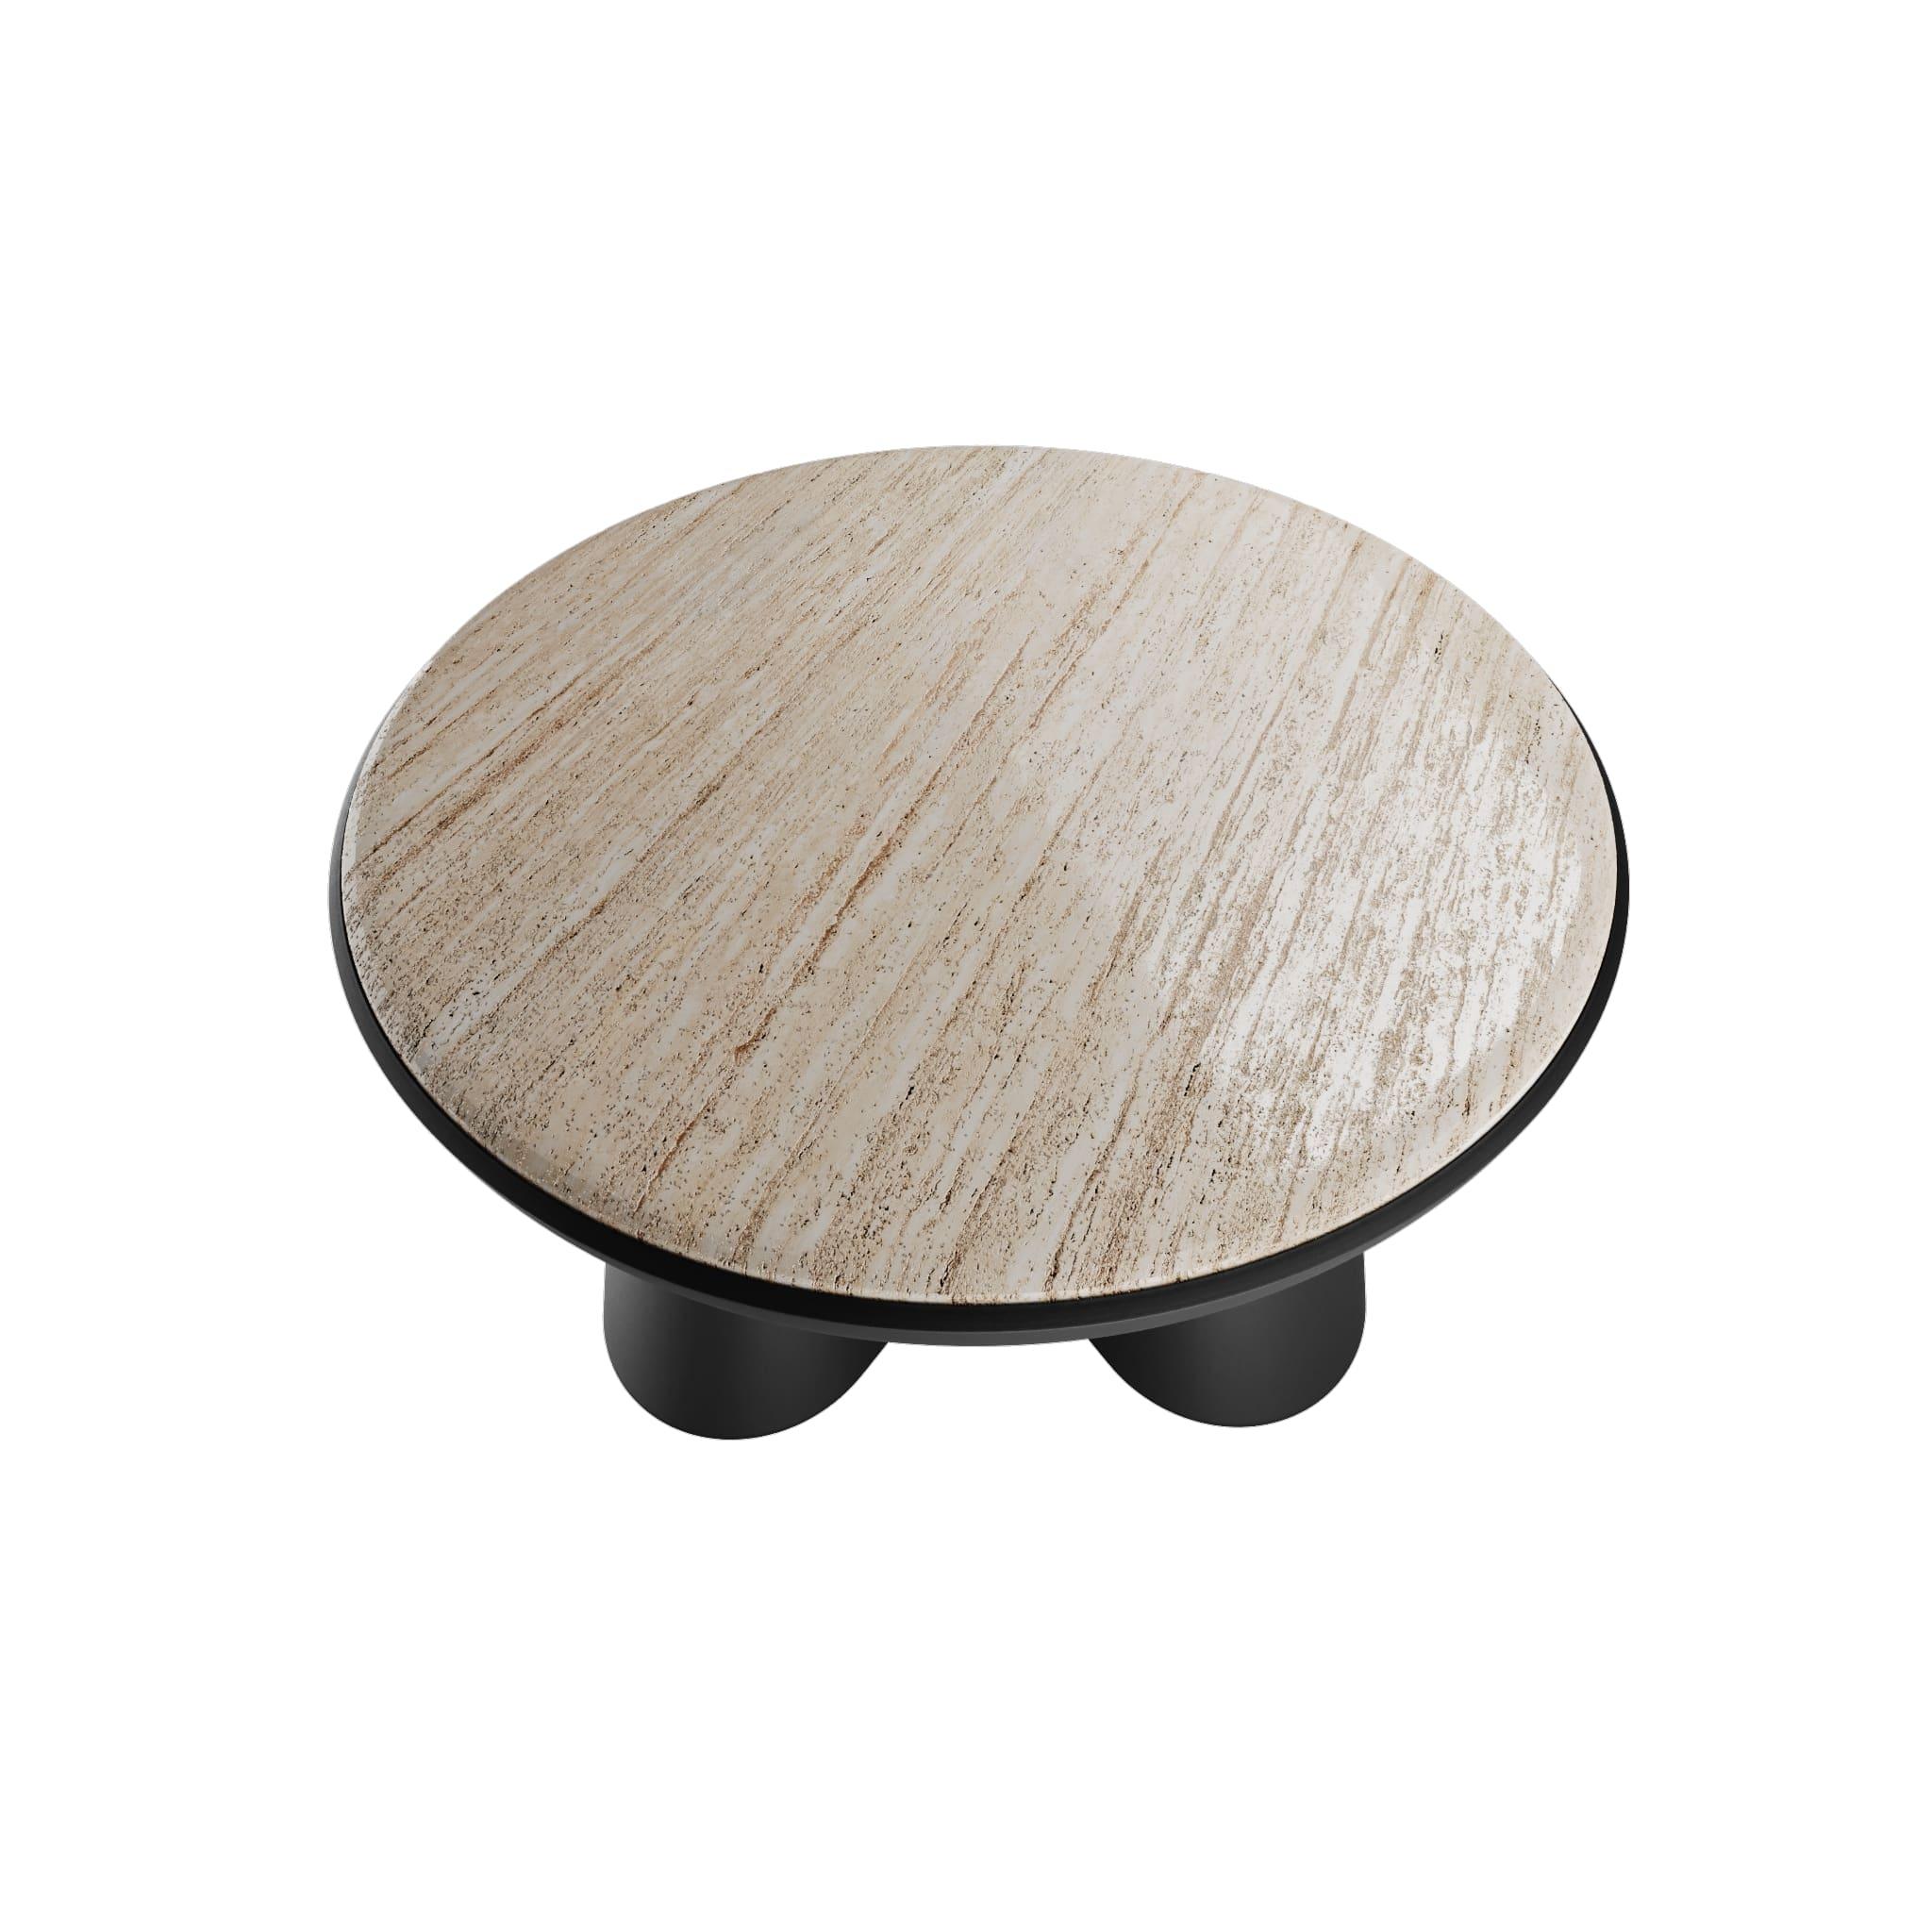 La table centrale Silhouette Black & Travertine est une table basse moderne avec un mélange captivant de textures et une silhouette minimale. La table centrale Fifih Black & Travertine peut être présentée comme une pièce unique ou combinée avec les